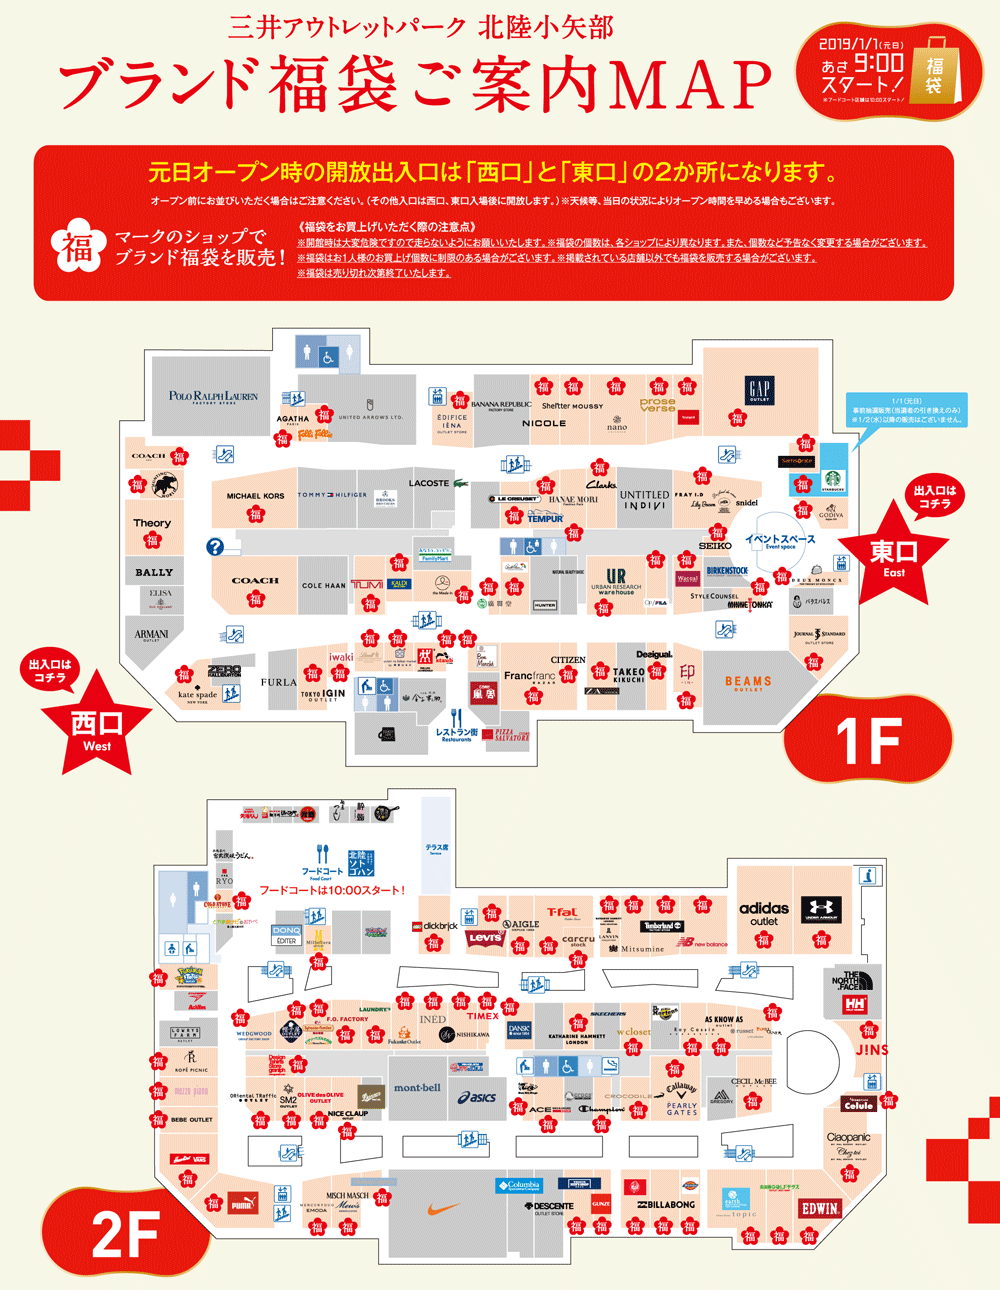 三井アウトレットパーク北陸小矢部2019年の福袋案内マップ